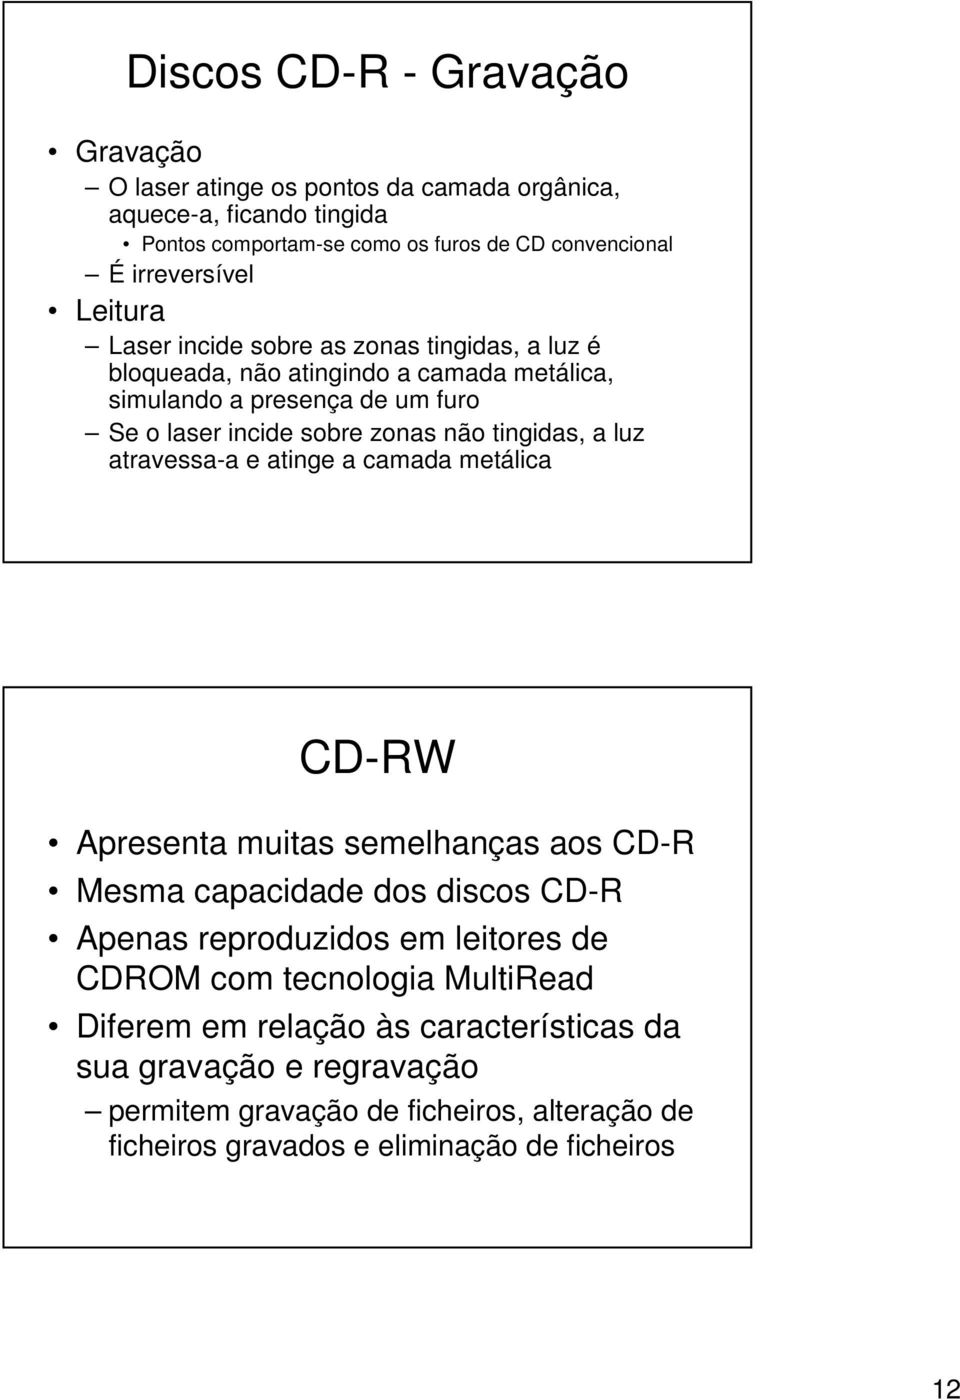 tingidas, a luz atravessa-a e atinge a camada metálica CD-RW Apresenta muitas semelhanças aos CD-R Mesma capacidade dos discos CD-R Apenas reproduzidos em leitores de CDROM